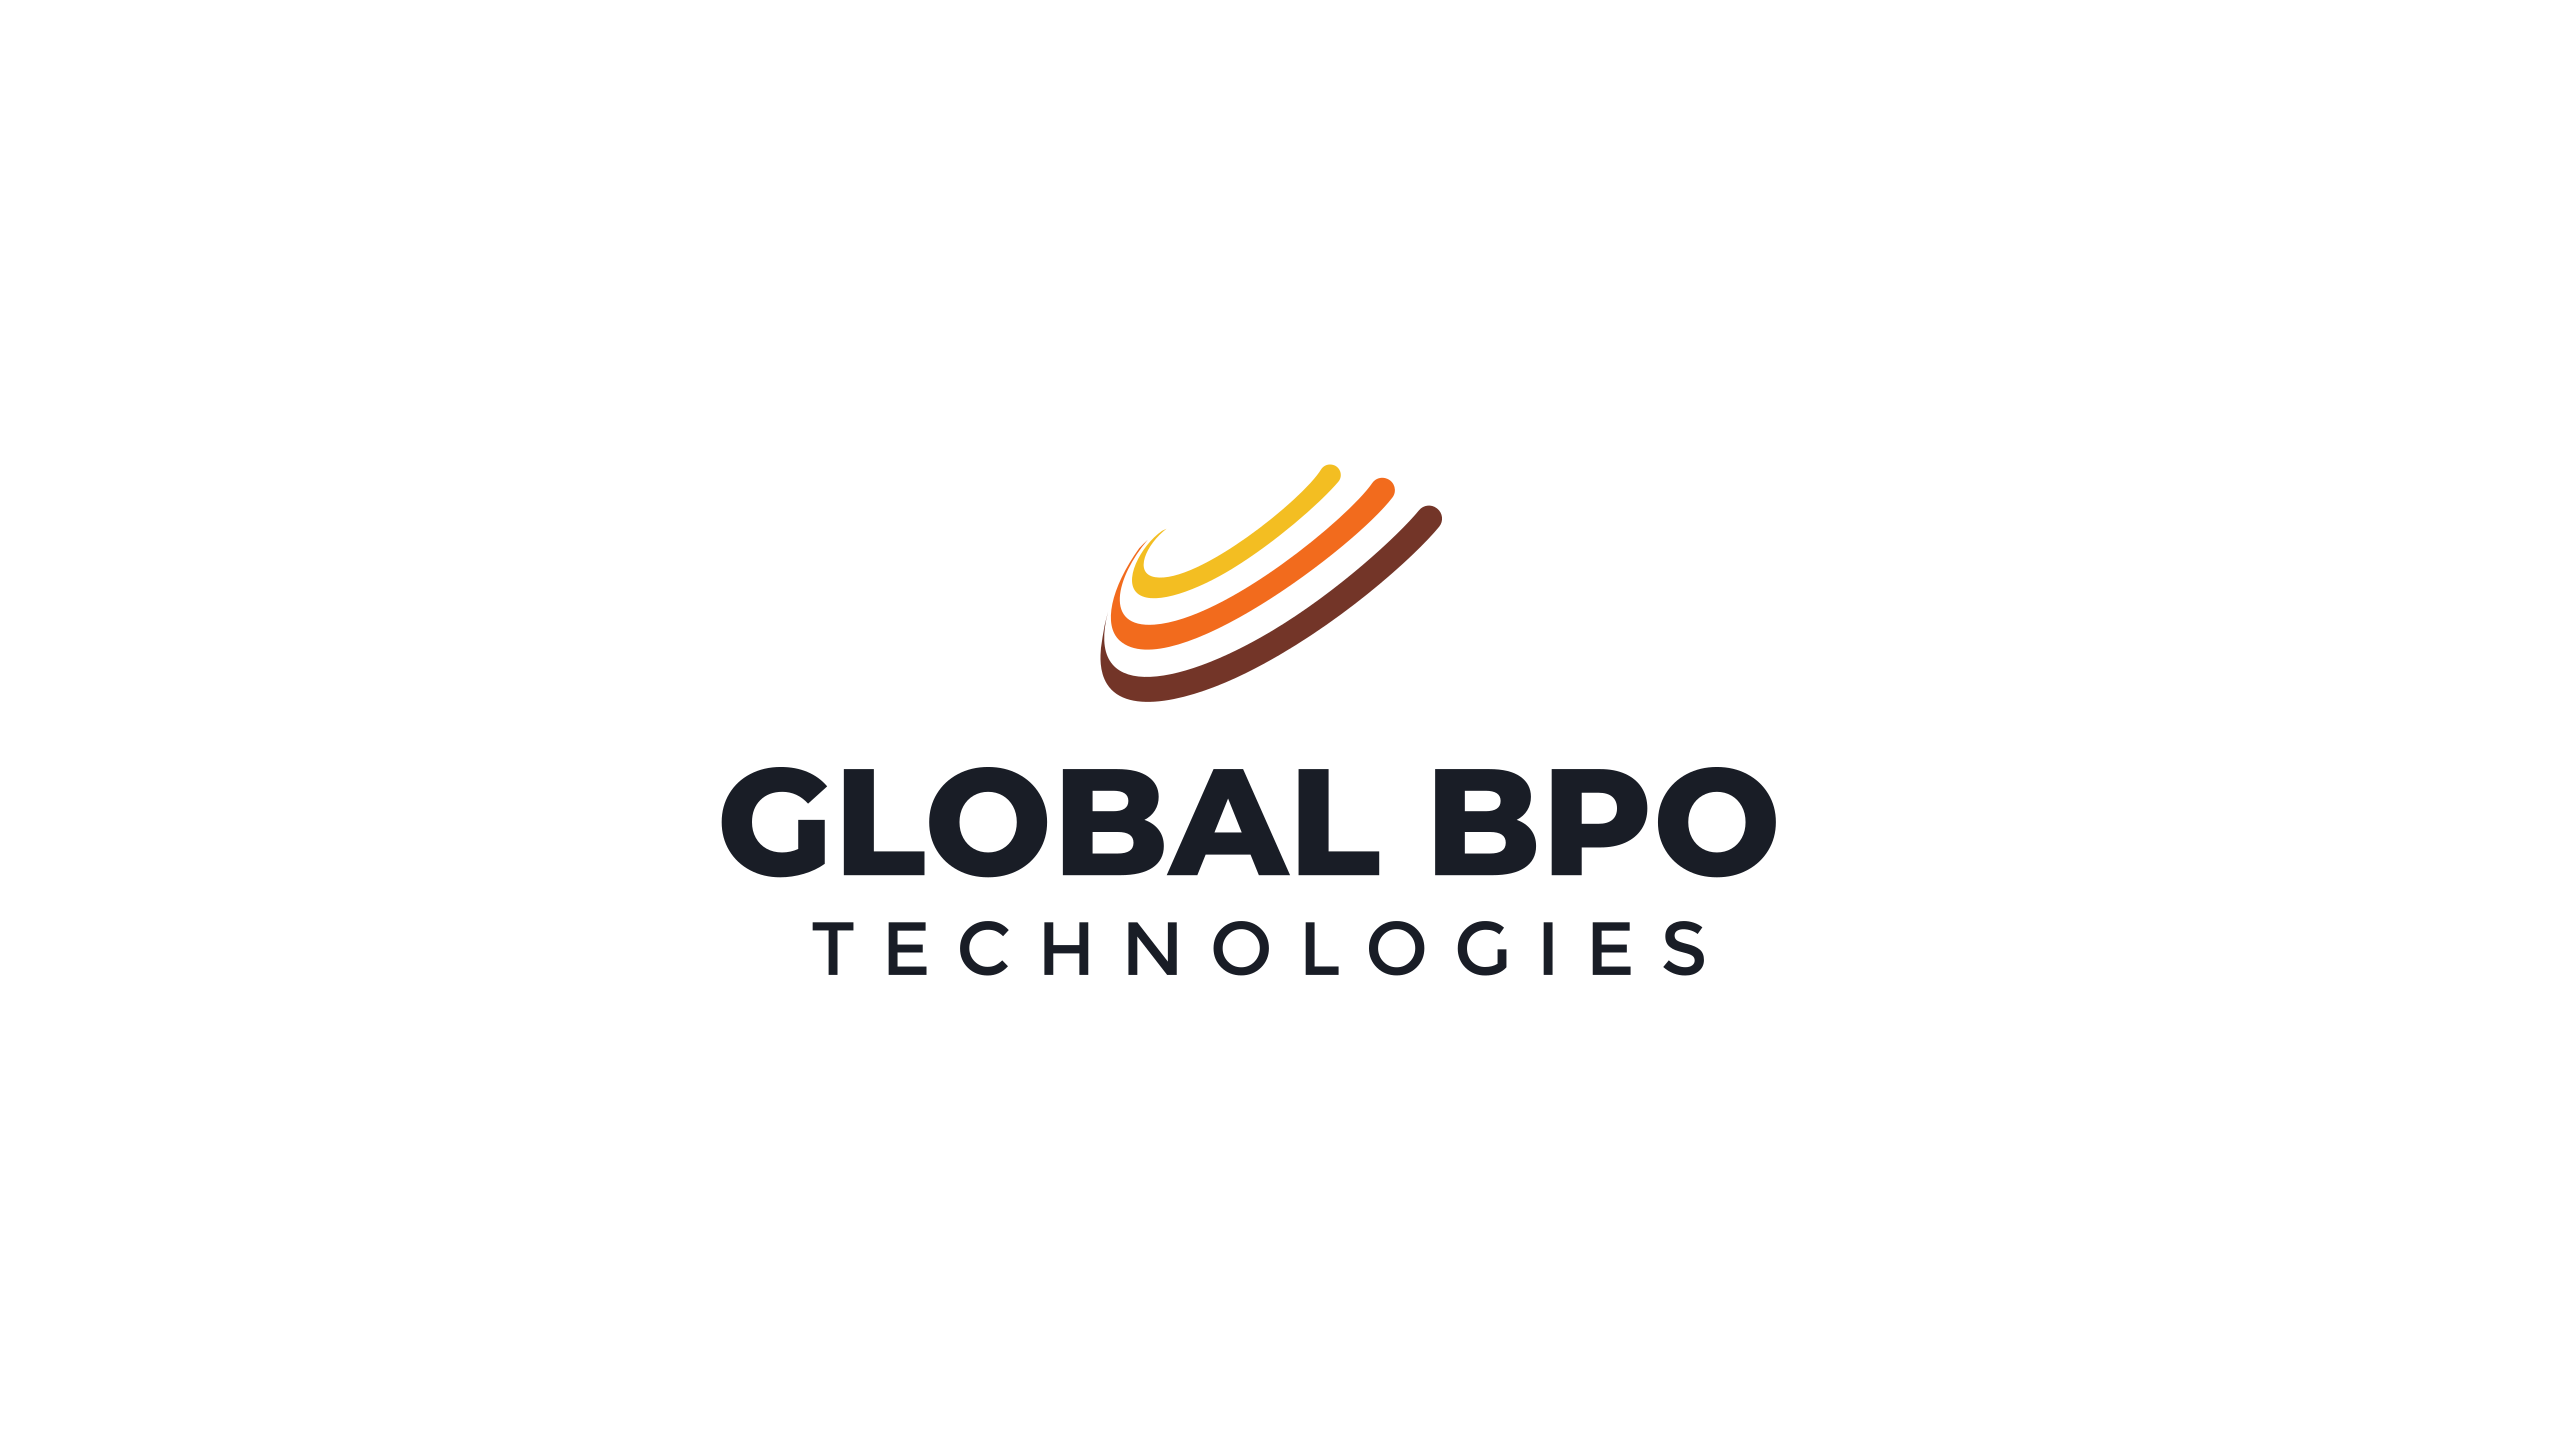 Global Bpo Technologies